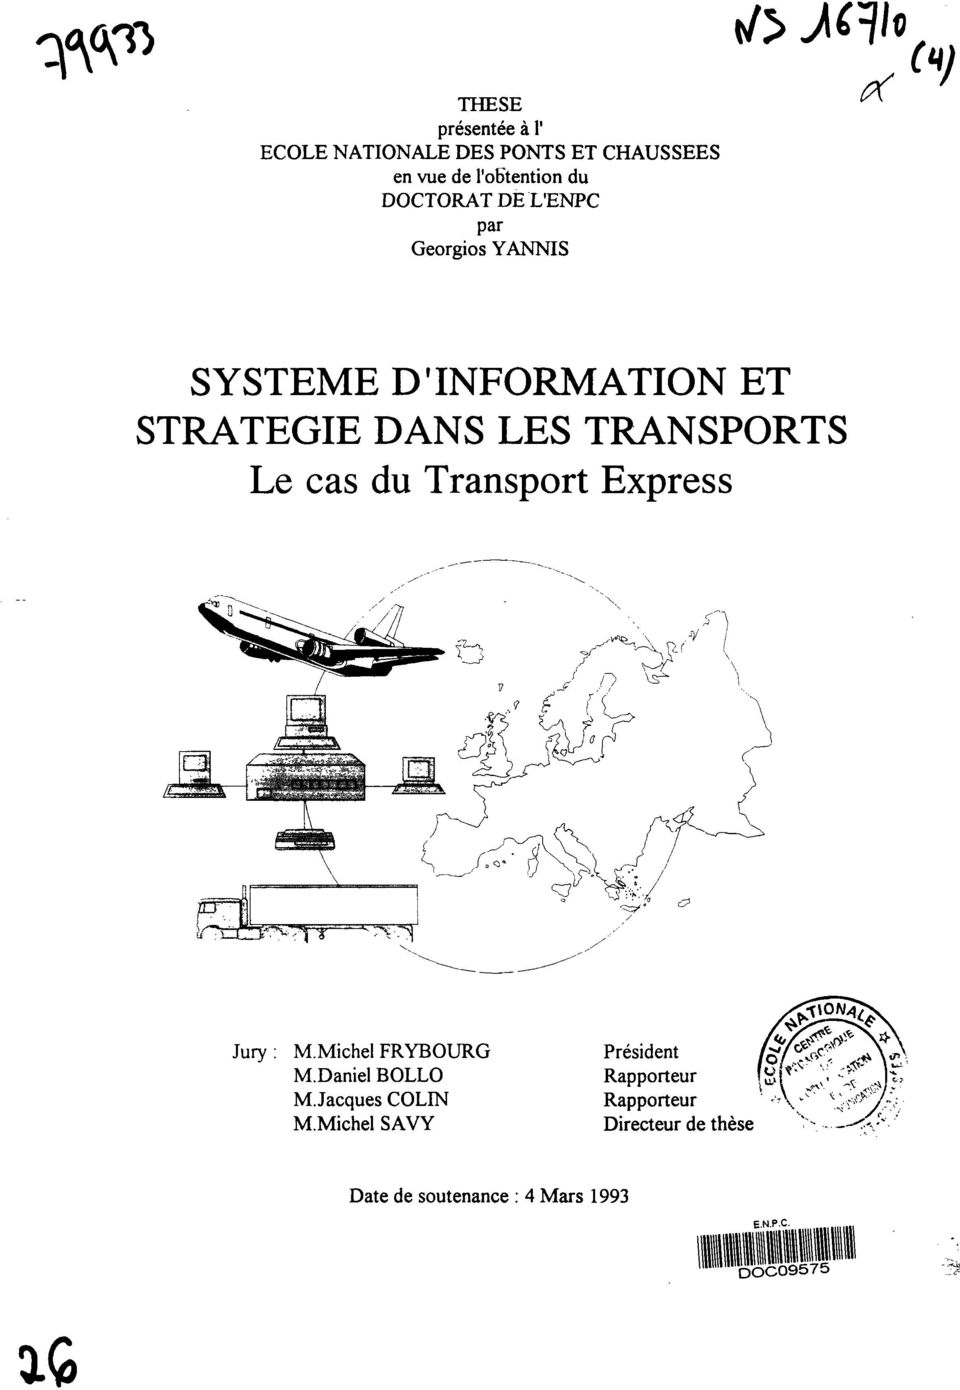 Le cas du Transport Express Jury M.Michel FRYBOURG M.Daniel BOLLO M.Jacques COLIN M.